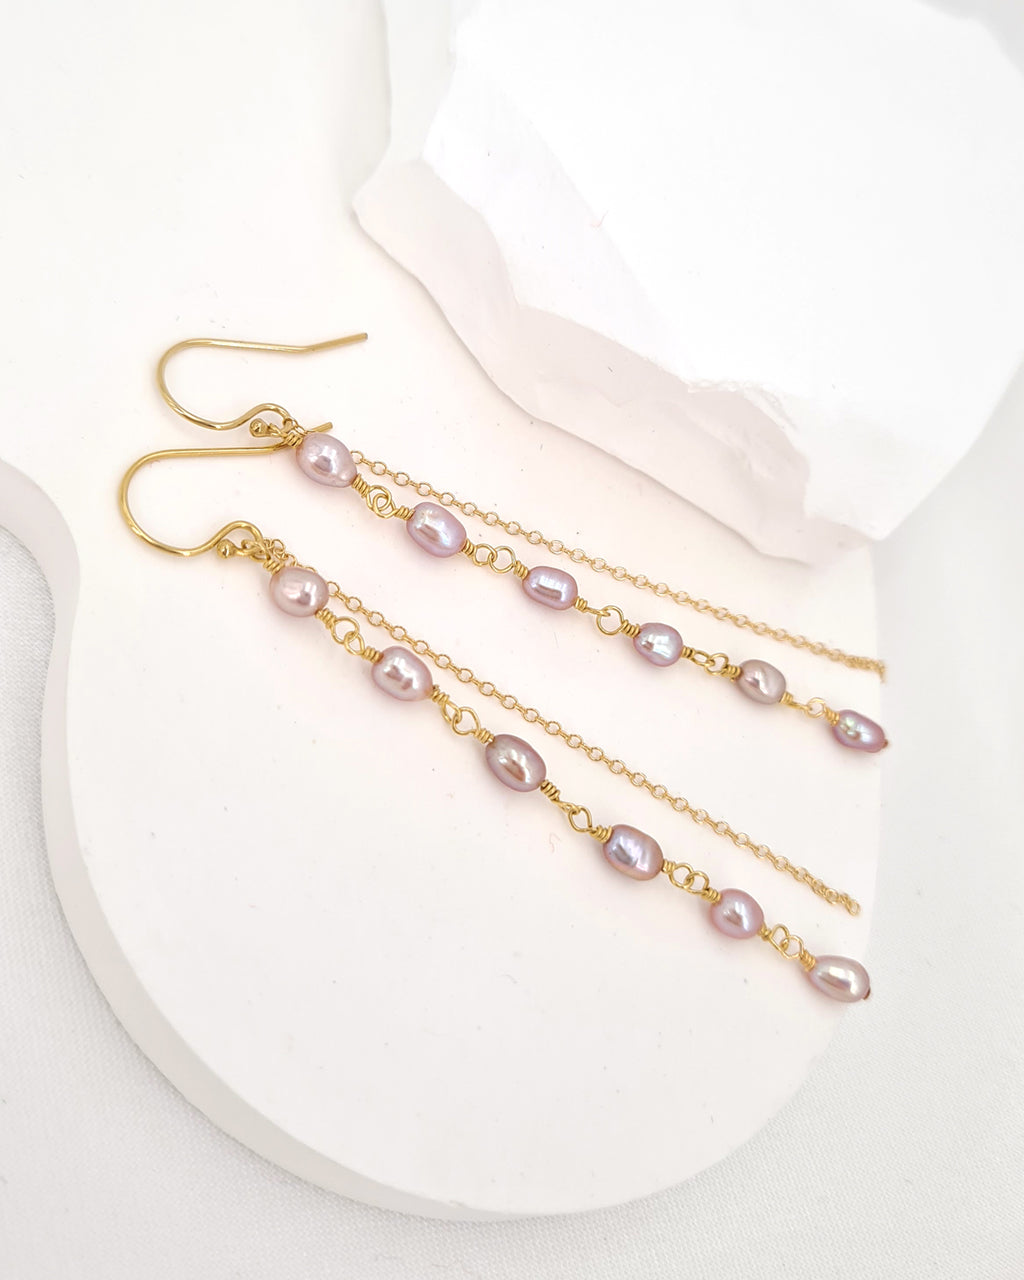 Tiny Pearl Earrings - Purple Pearl Long Earrings in 14k Gold Filled Jewelry, Handmade in Singapore